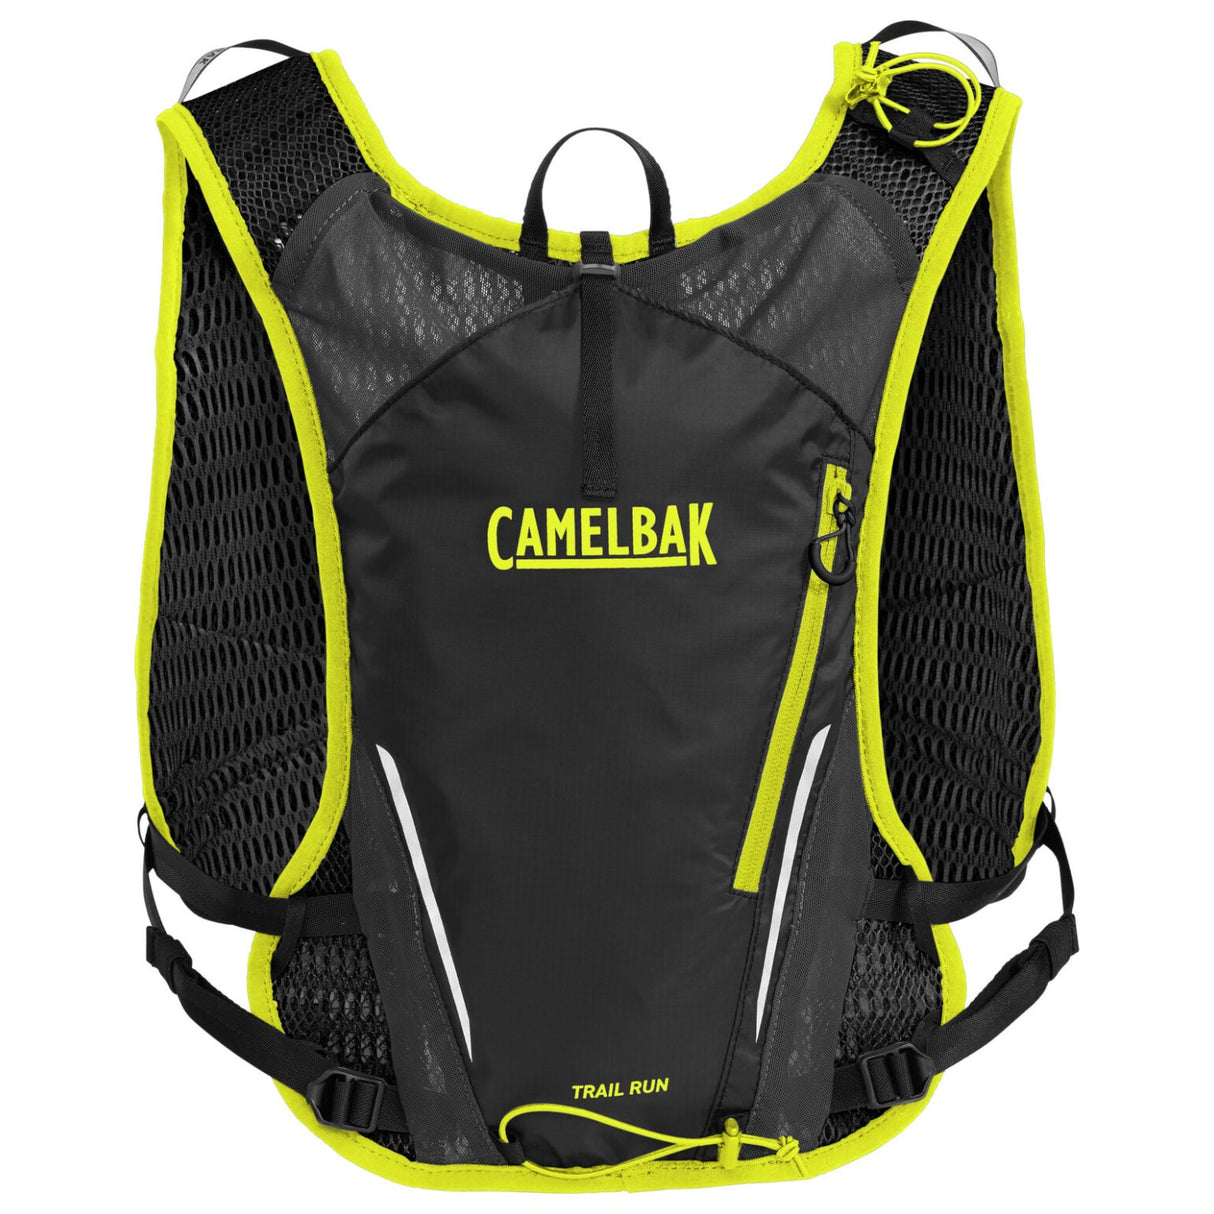 NEW Camelbak Unisex Trail Run Vest